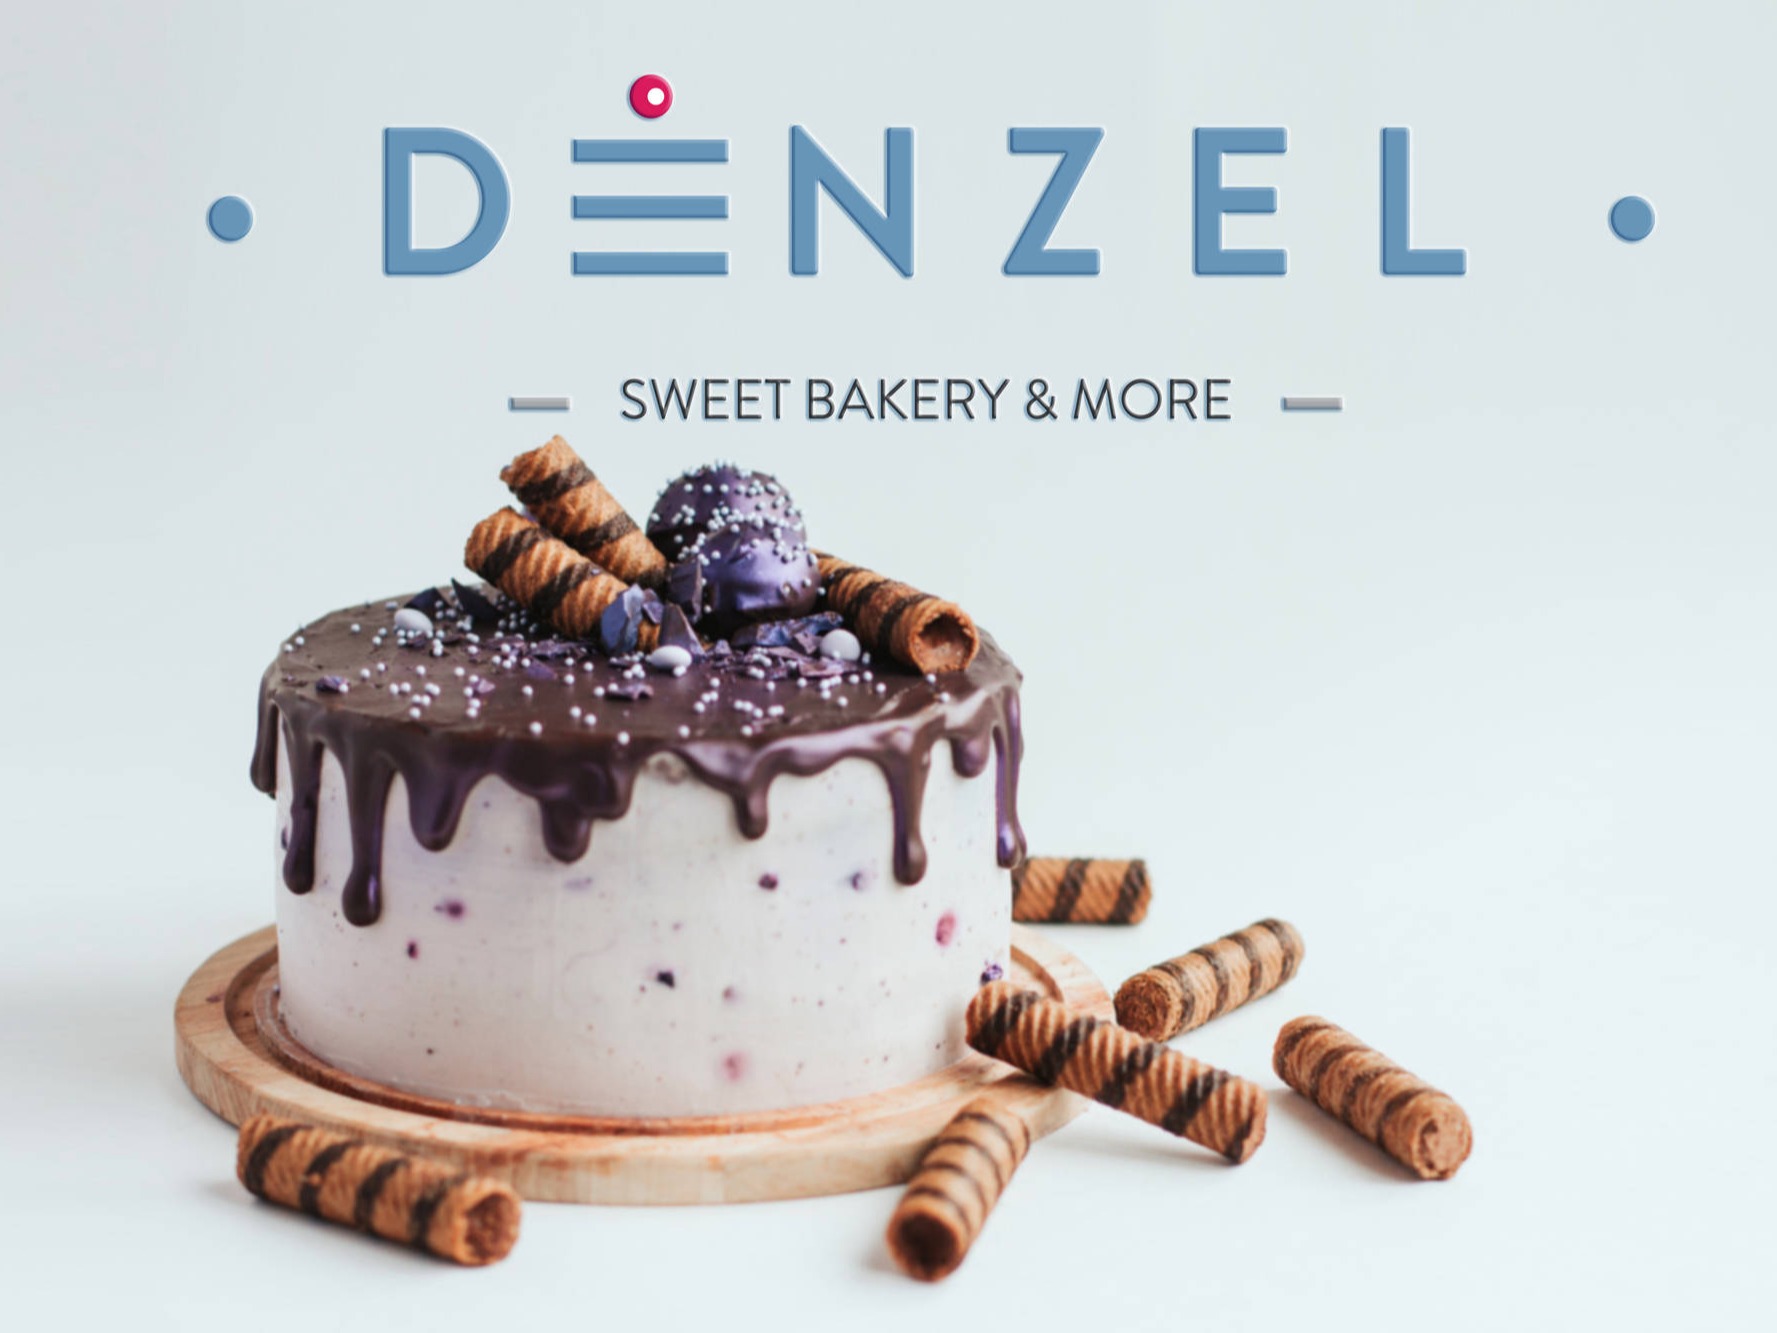 denzel-sweet-bakery-meg-creative-house